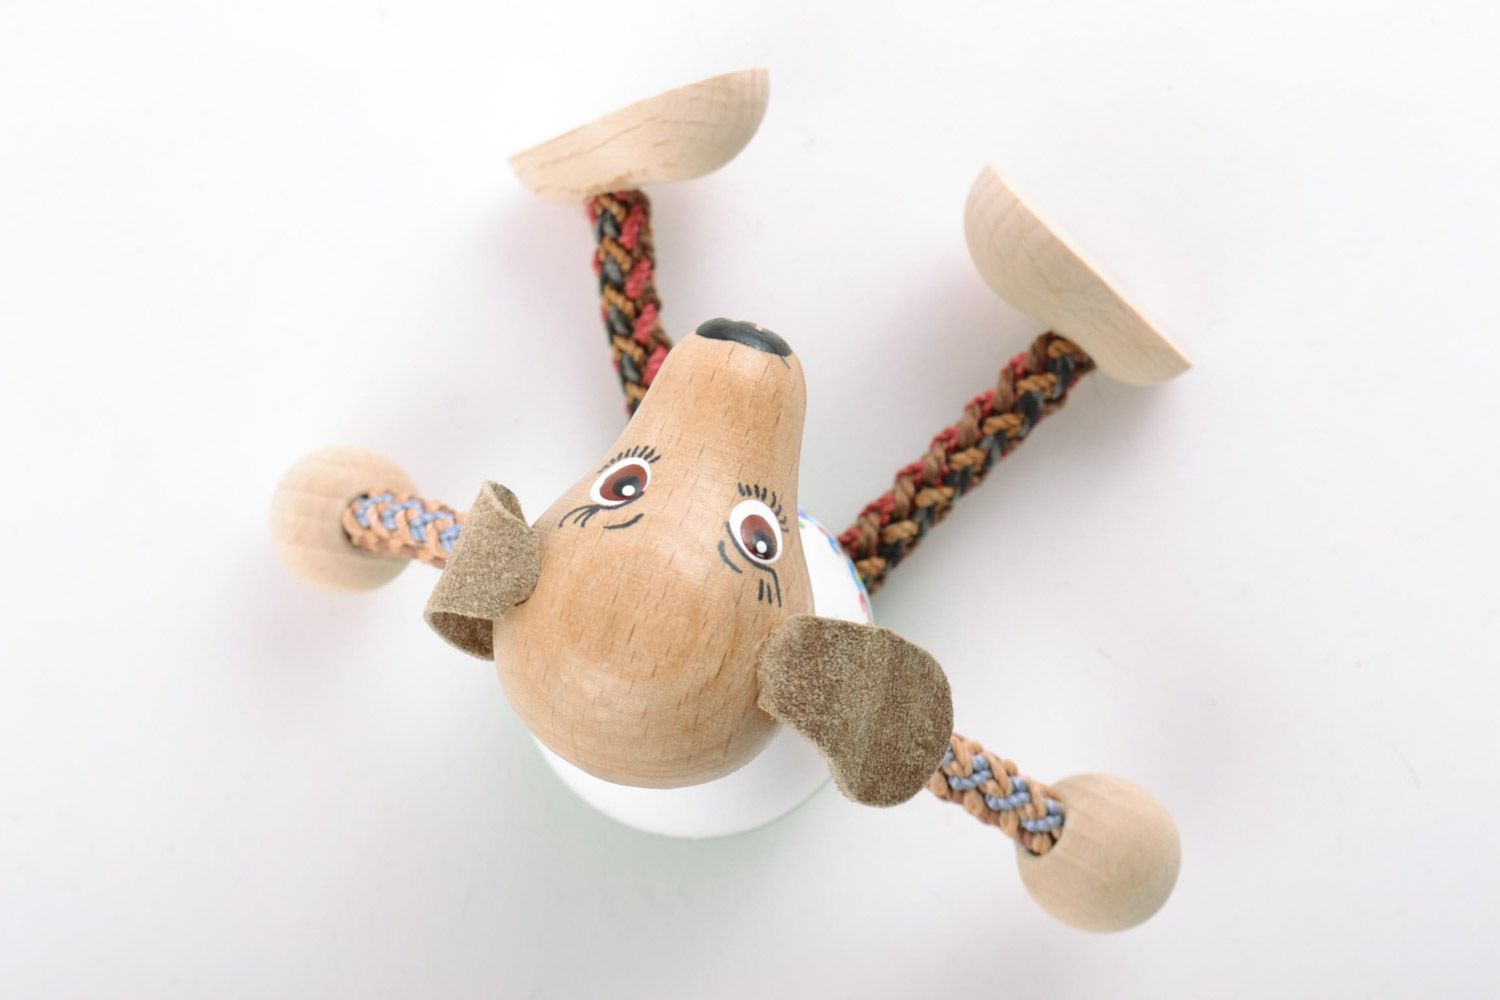 Öko Holz Spielzeug Hund grell schön Handarbeit Geschenk für Kinder foto 4